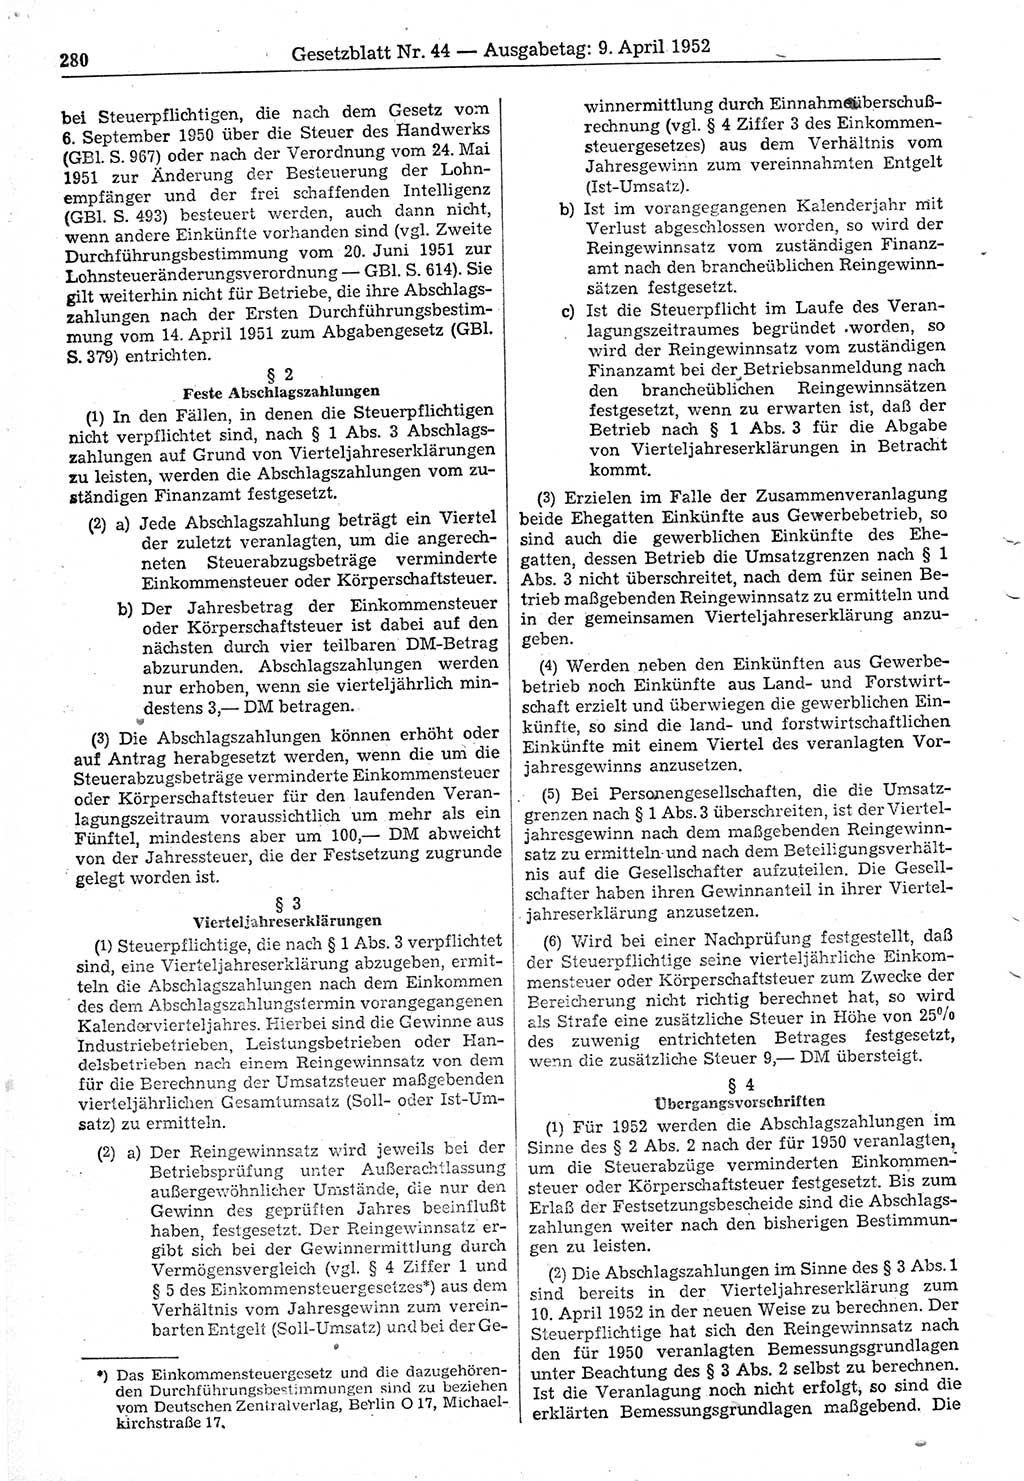 Gesetzblatt (GBl.) der Deutschen Demokratischen Republik (DDR) 1952, Seite 280 (GBl. DDR 1952, S. 280)